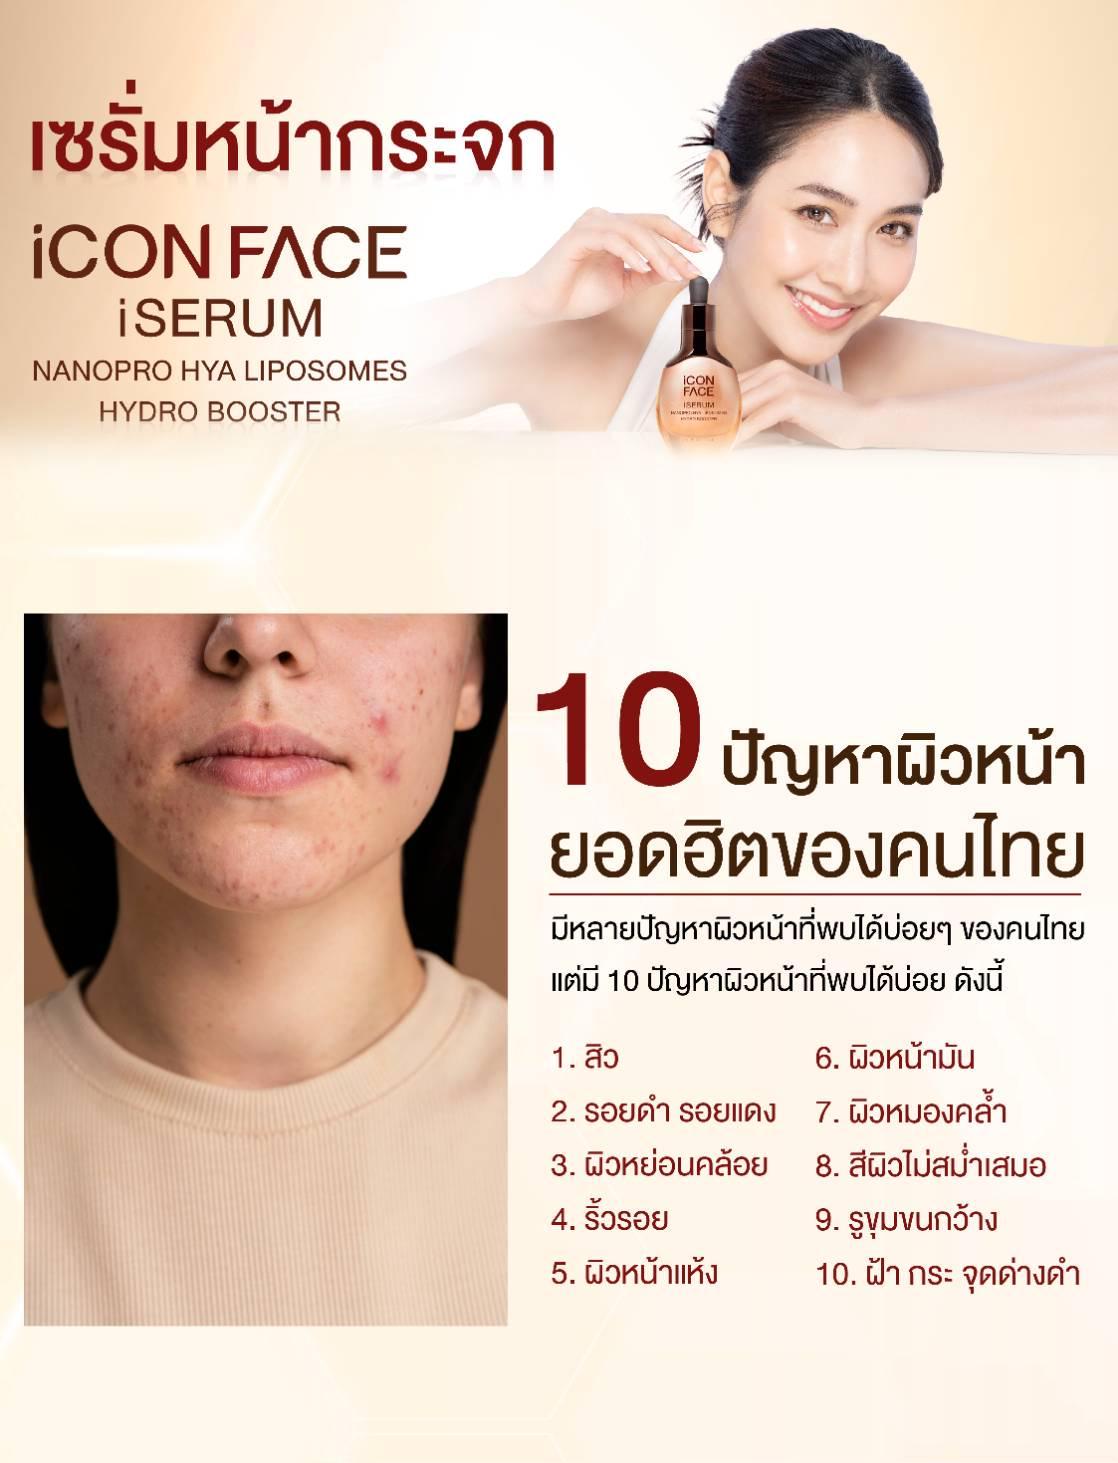 ภาพหน้าปก iCON FACE SERUM เซรั่มบูสเตอร์ นวัตกรรมนาโน เพื่อแก้ไขปัญหาผิวหน้าของคนไทย ที่:0